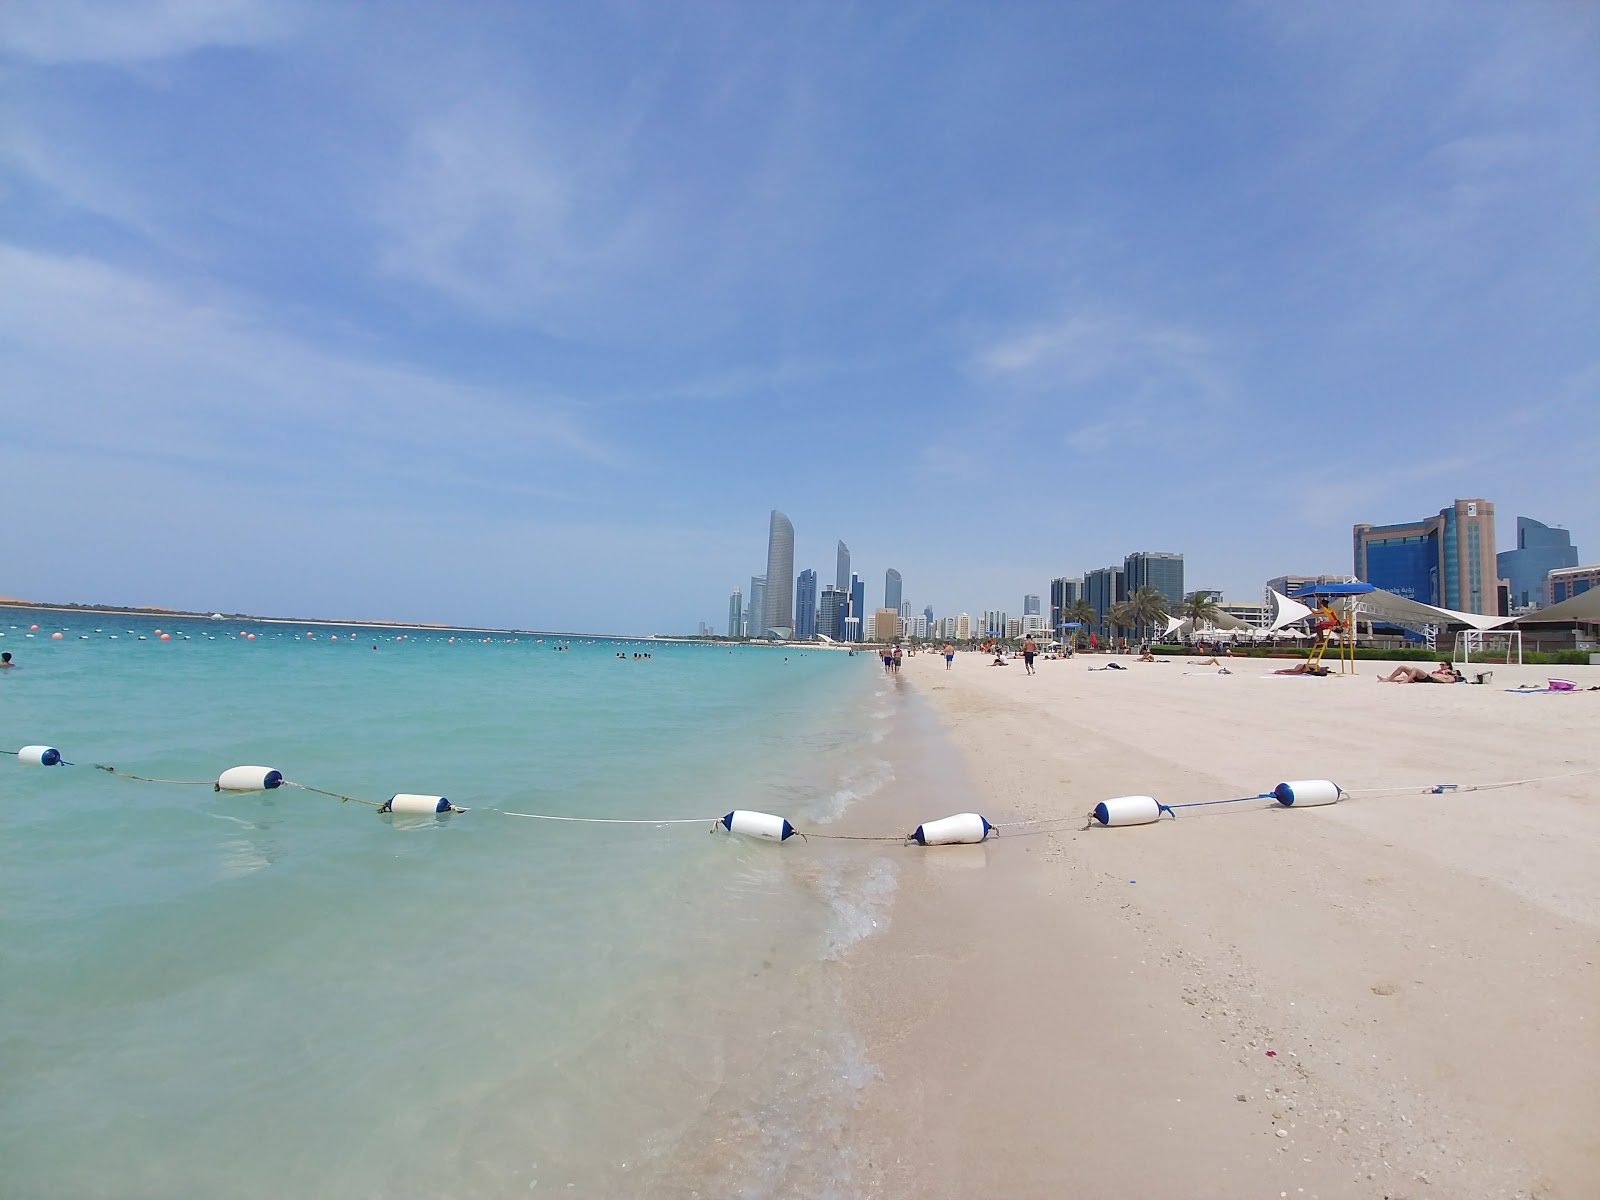 Fotografie cu Corniche beach cu plajă spațioasă